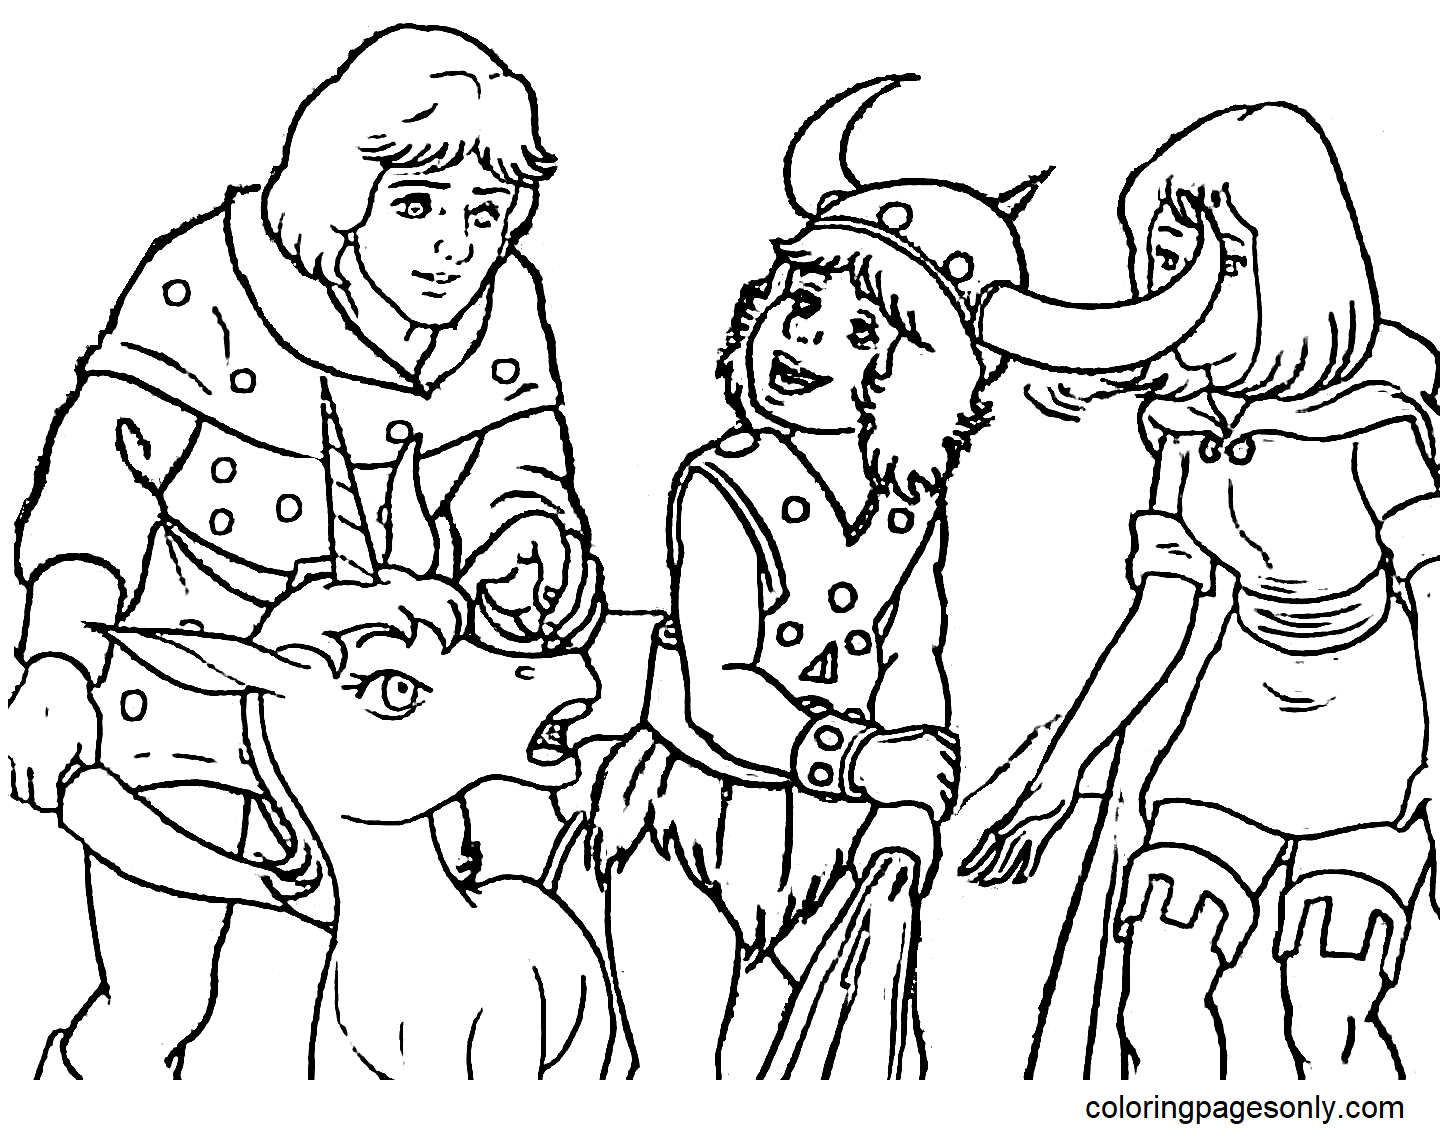 Hank de Ranger, Bobby de Barbaar, Sheila de Dief en Uni de Eenhoorn uit Dungeons & Dragons